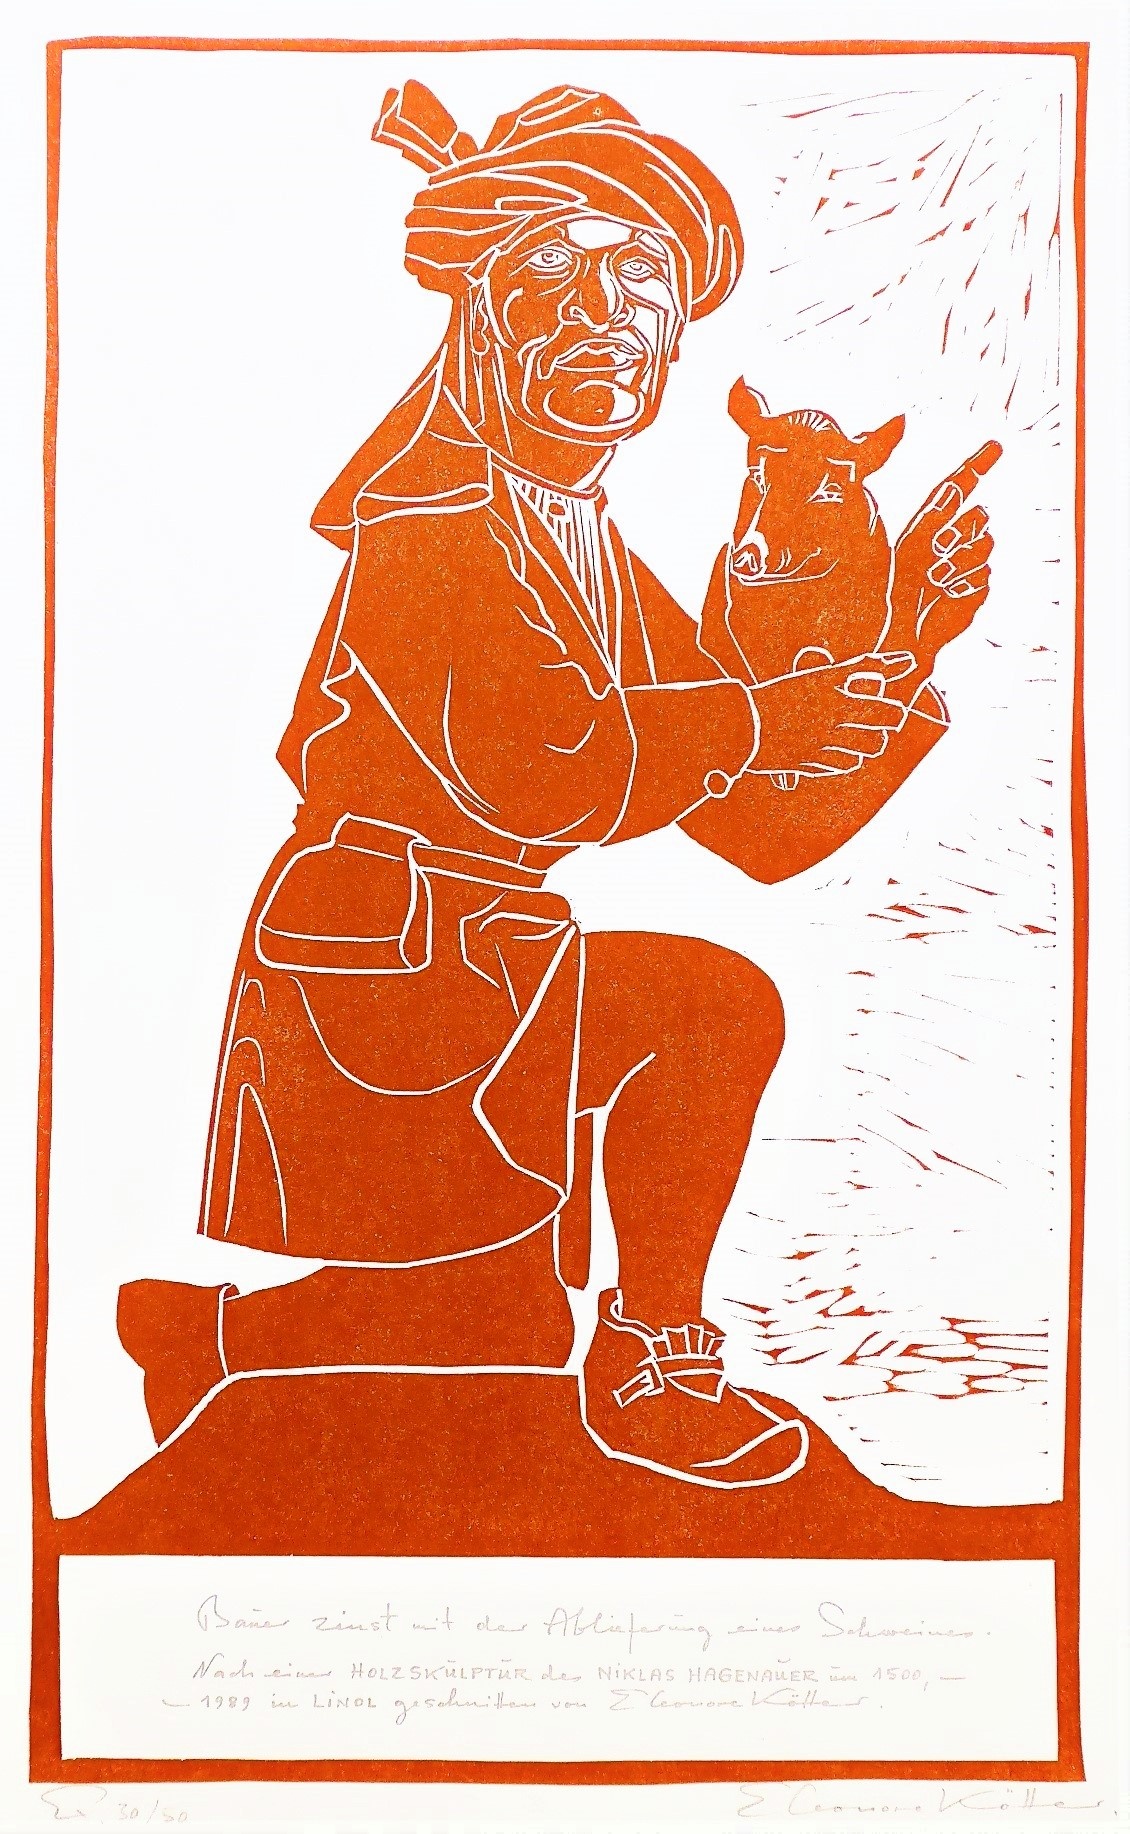 Bauer zinst mit der Ablieferung eines Schweines (Kunststiftung Eleonore Kötter CC BY-NC-SA)